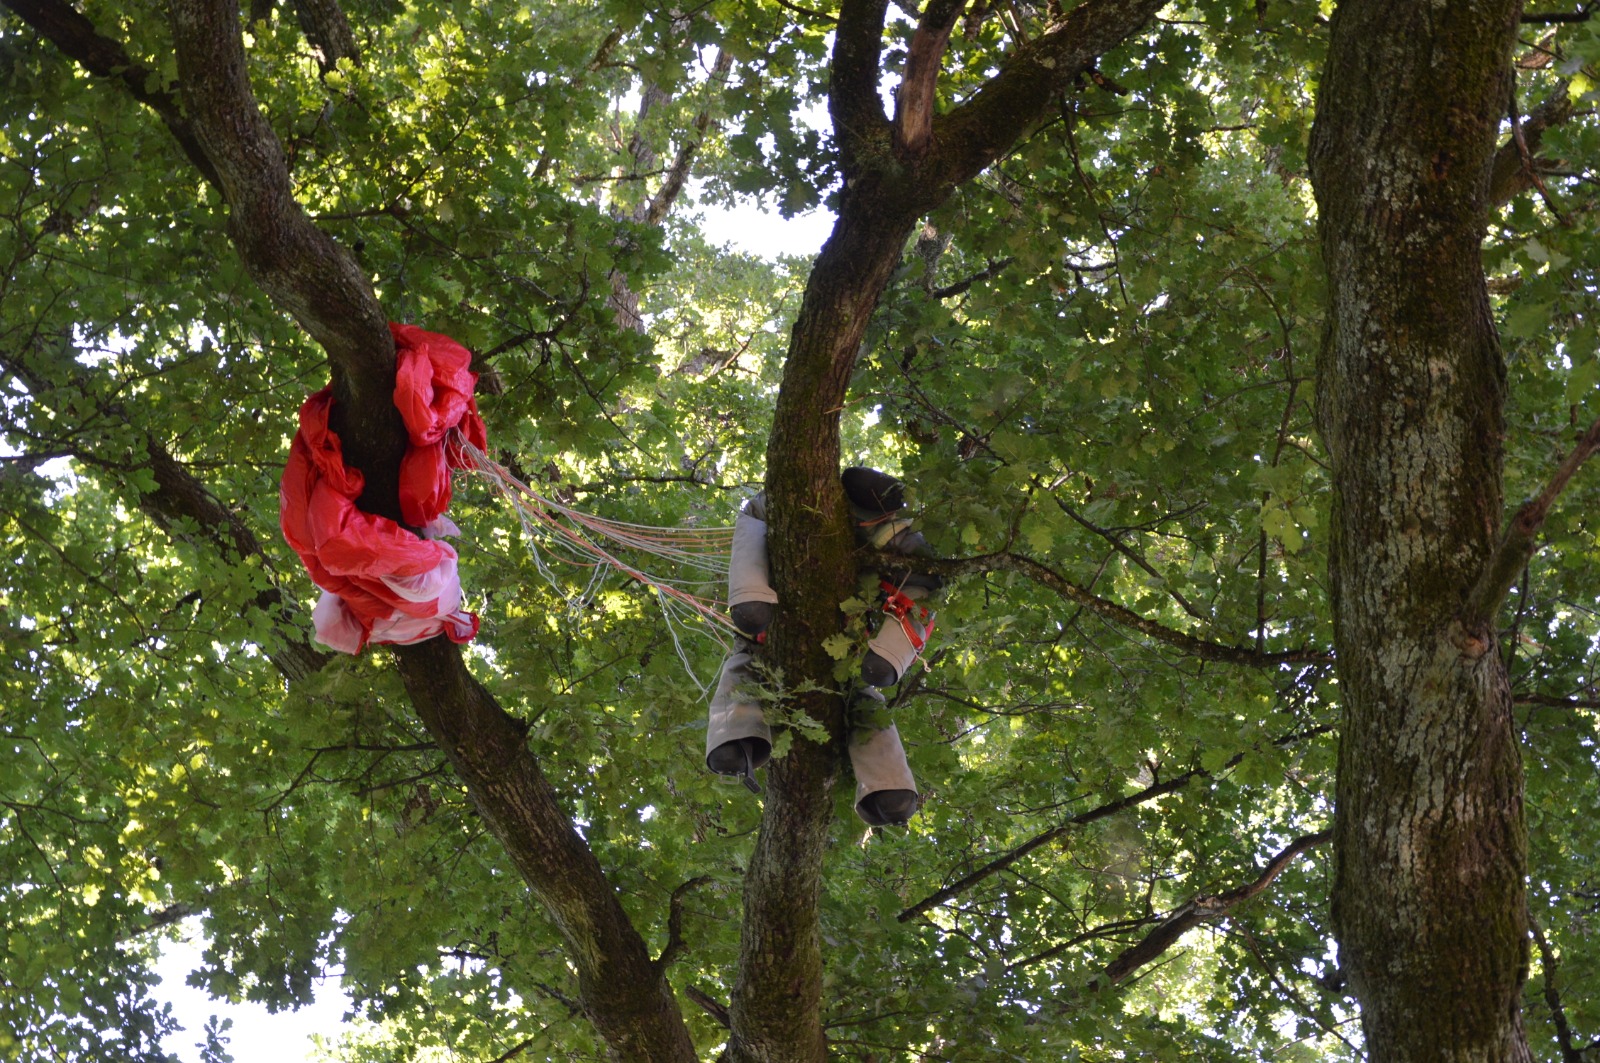 01.08.2020 - Übung: Paragleiter von Baum gerettet